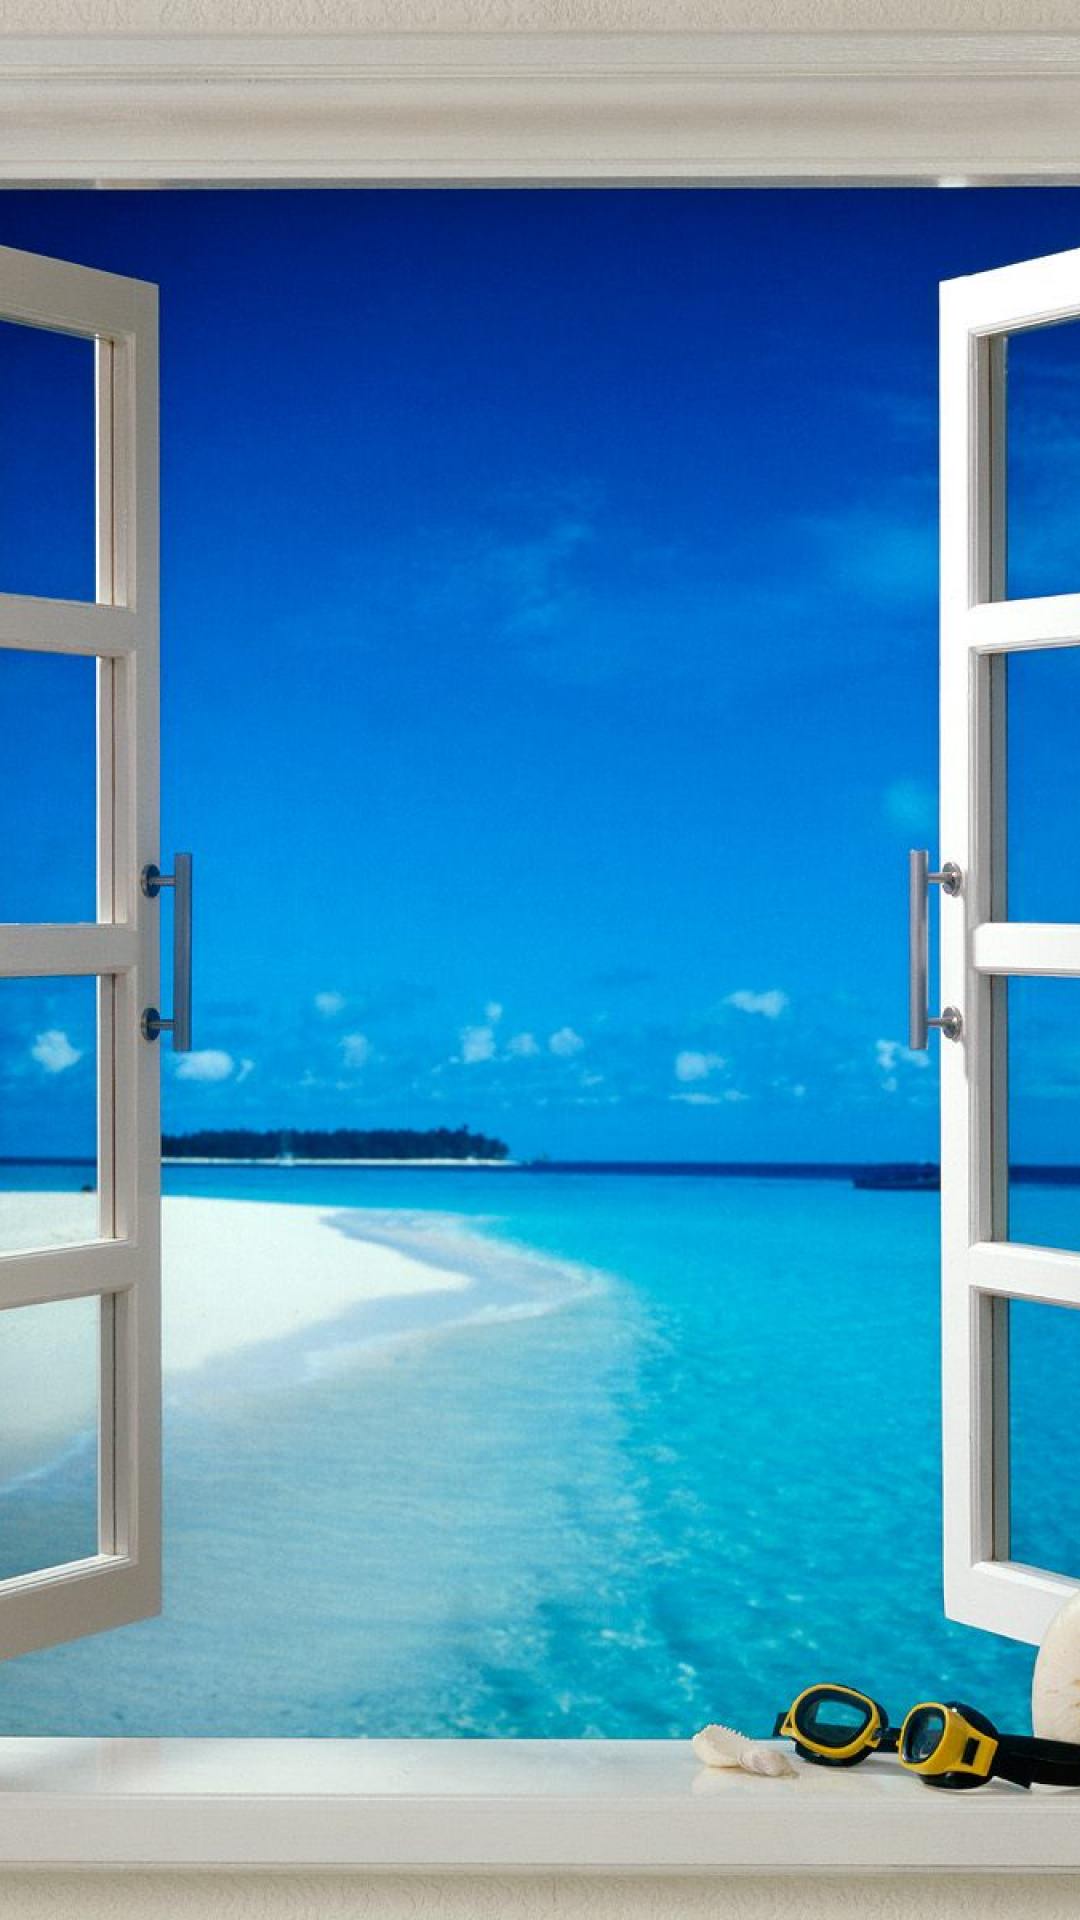 窓から望むビーチ Iphone6 Plus壁紙 Wallpaperbox